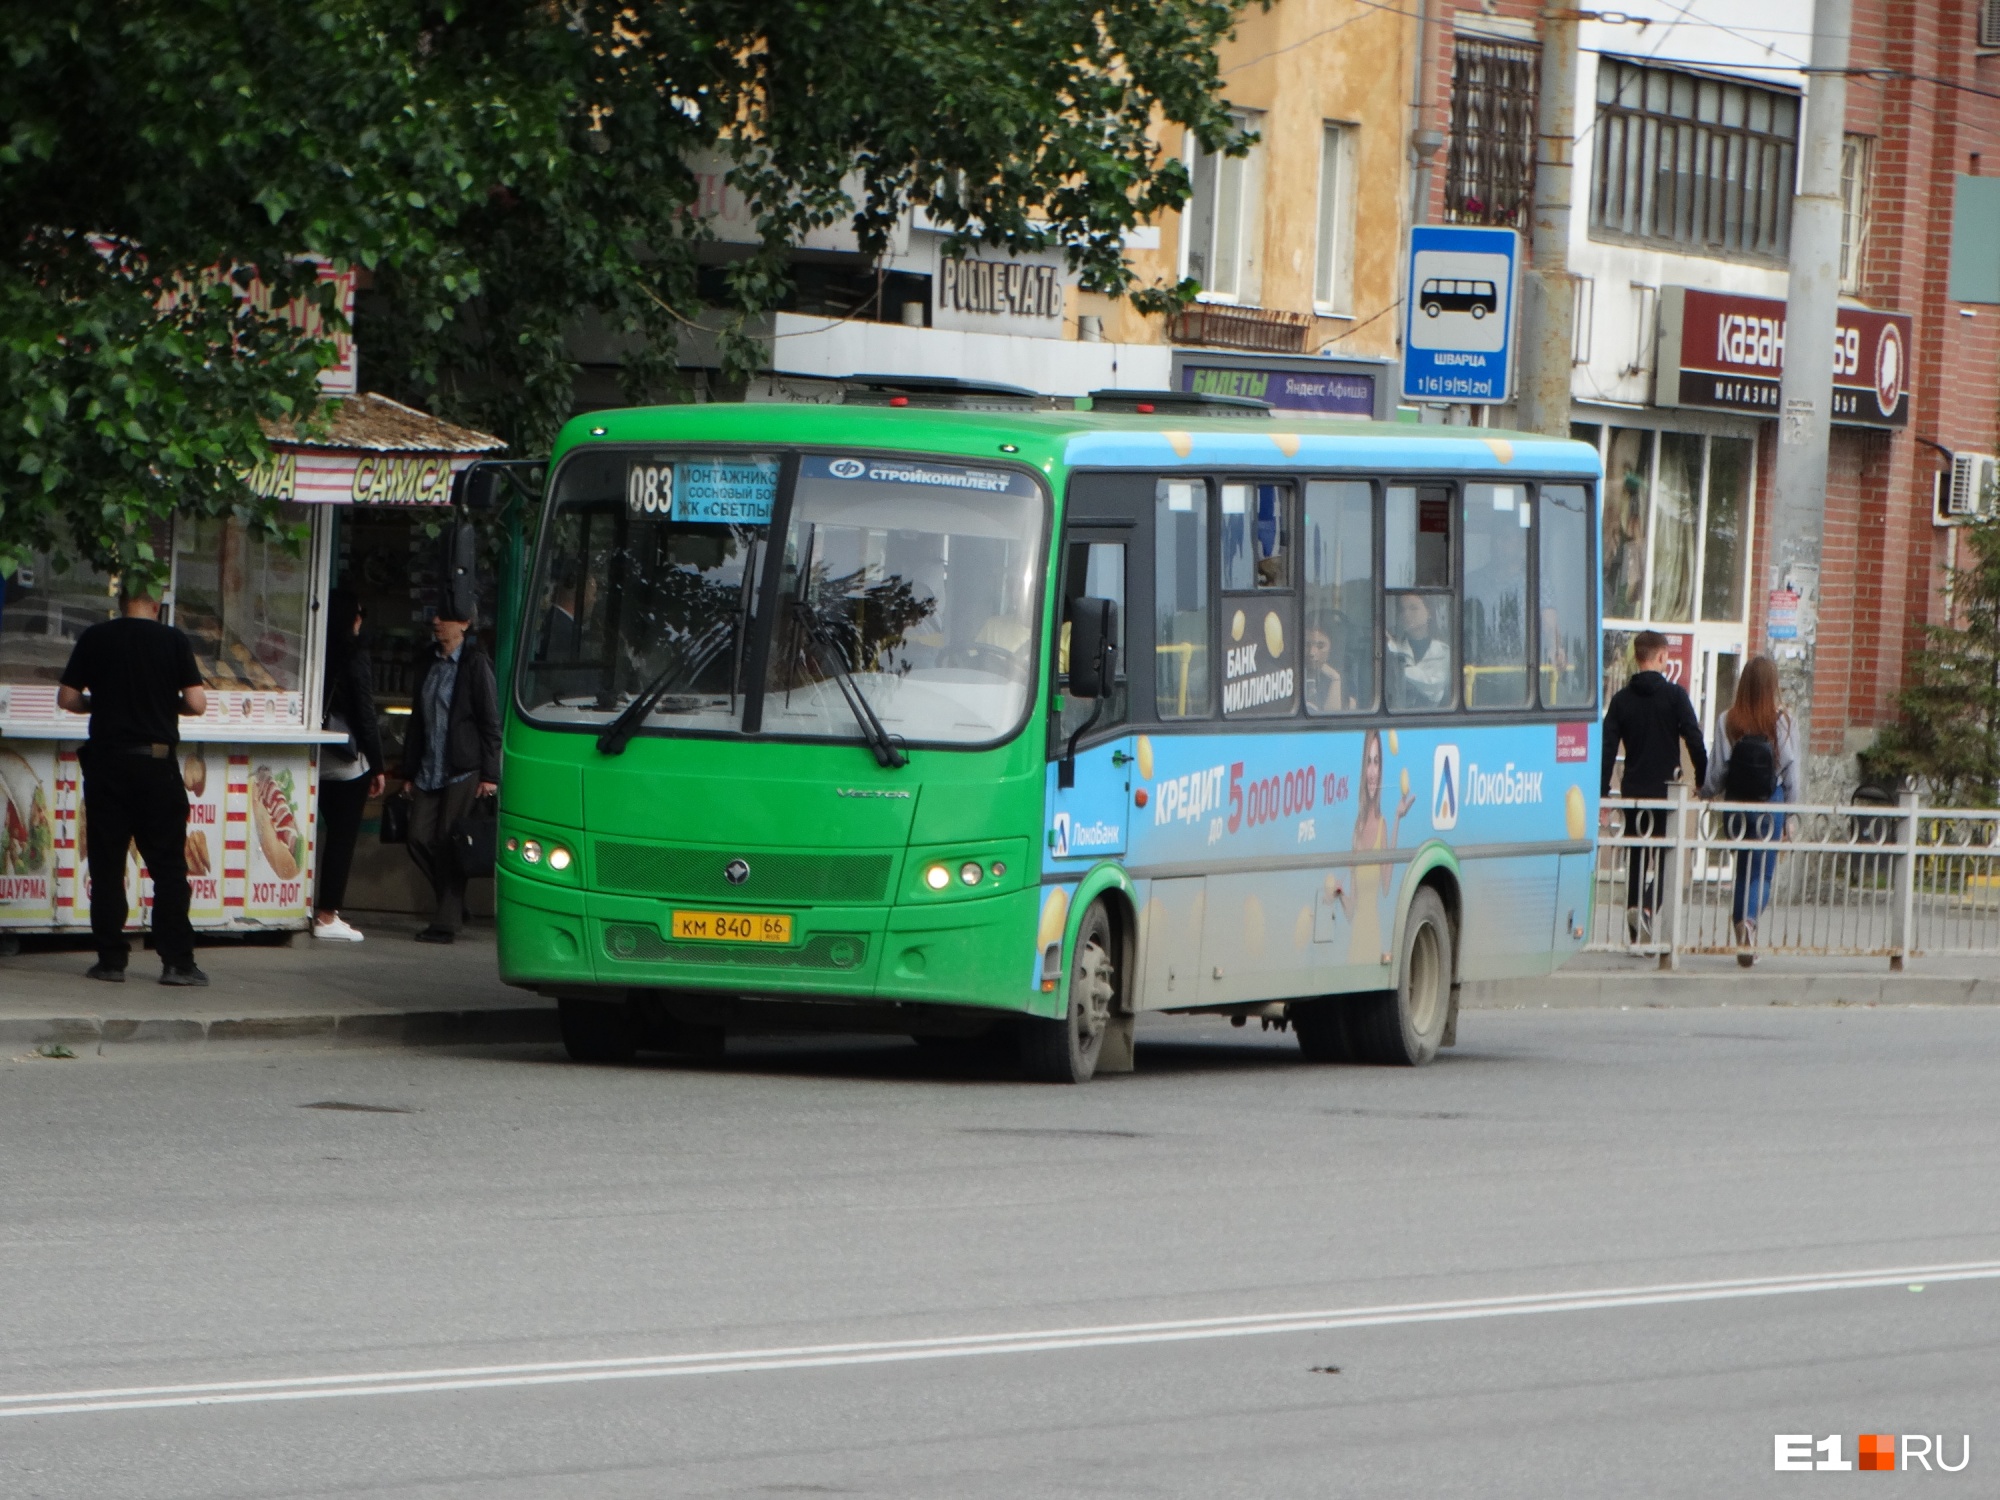 Шесть популярных автобусов в Екатеринбурге меняют маршруты еще на месяц. Показываем новые схемы